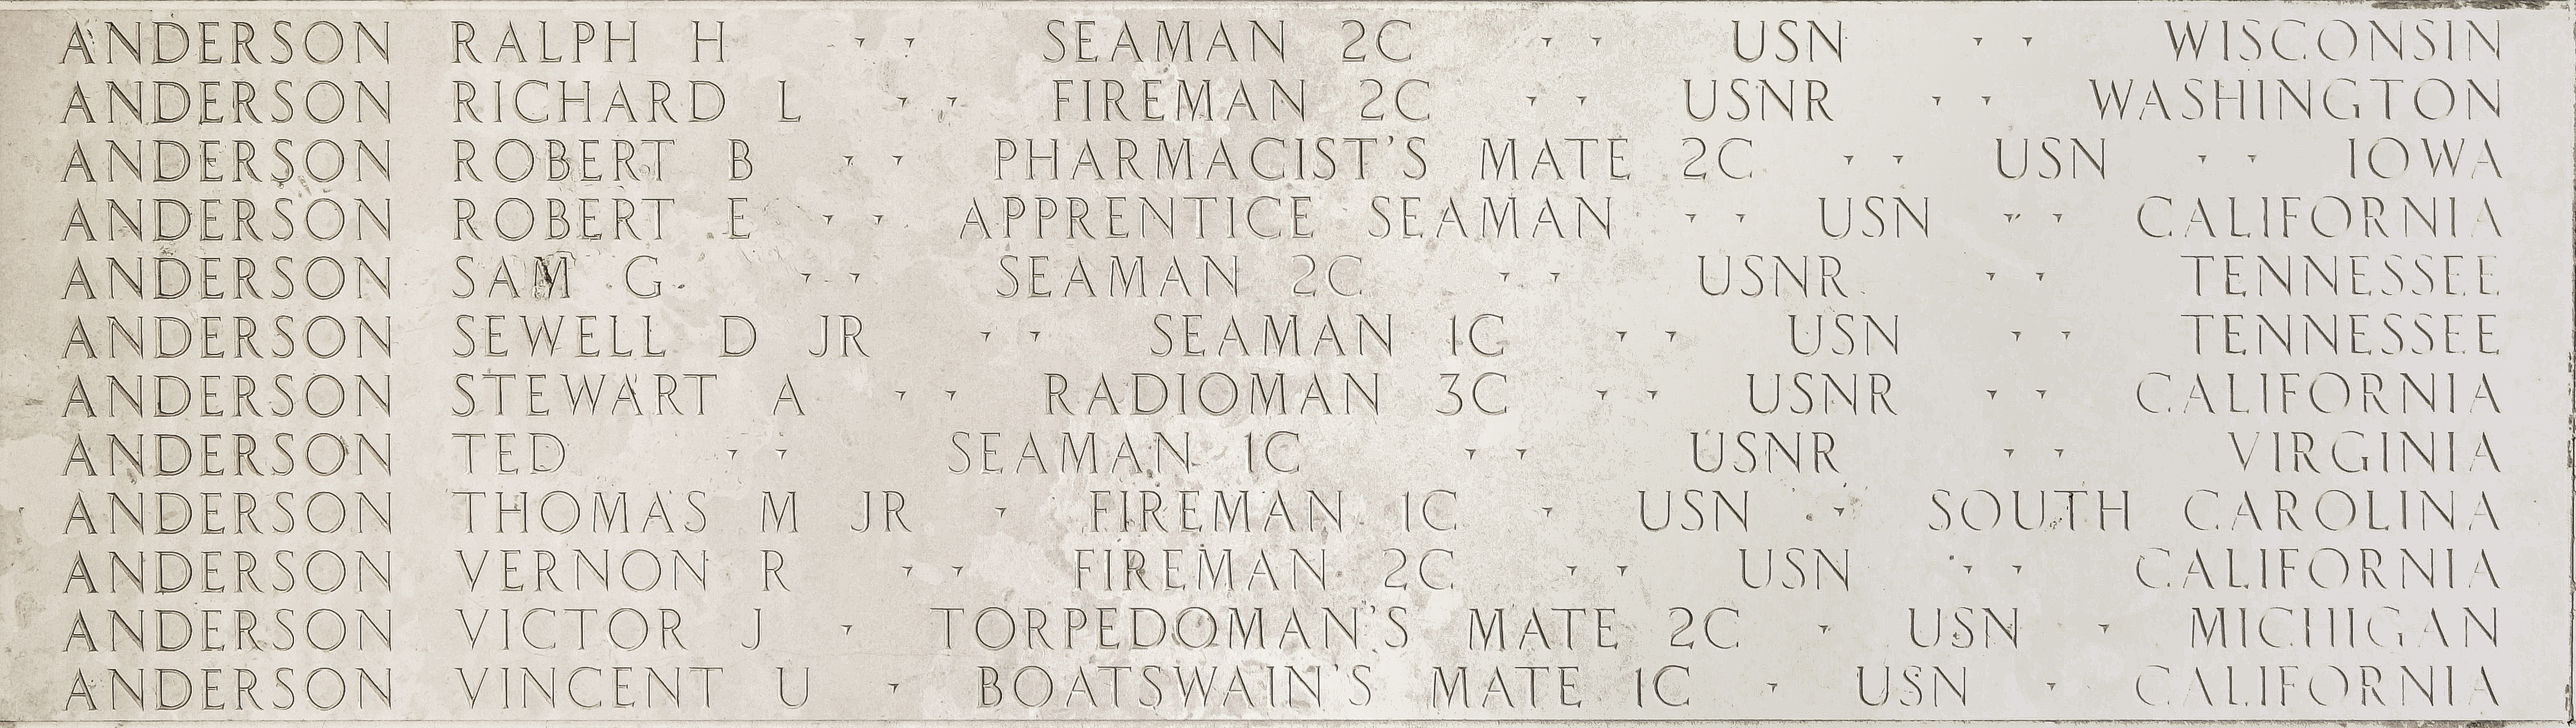 Robert E. Anderson, Seaman Apprentice